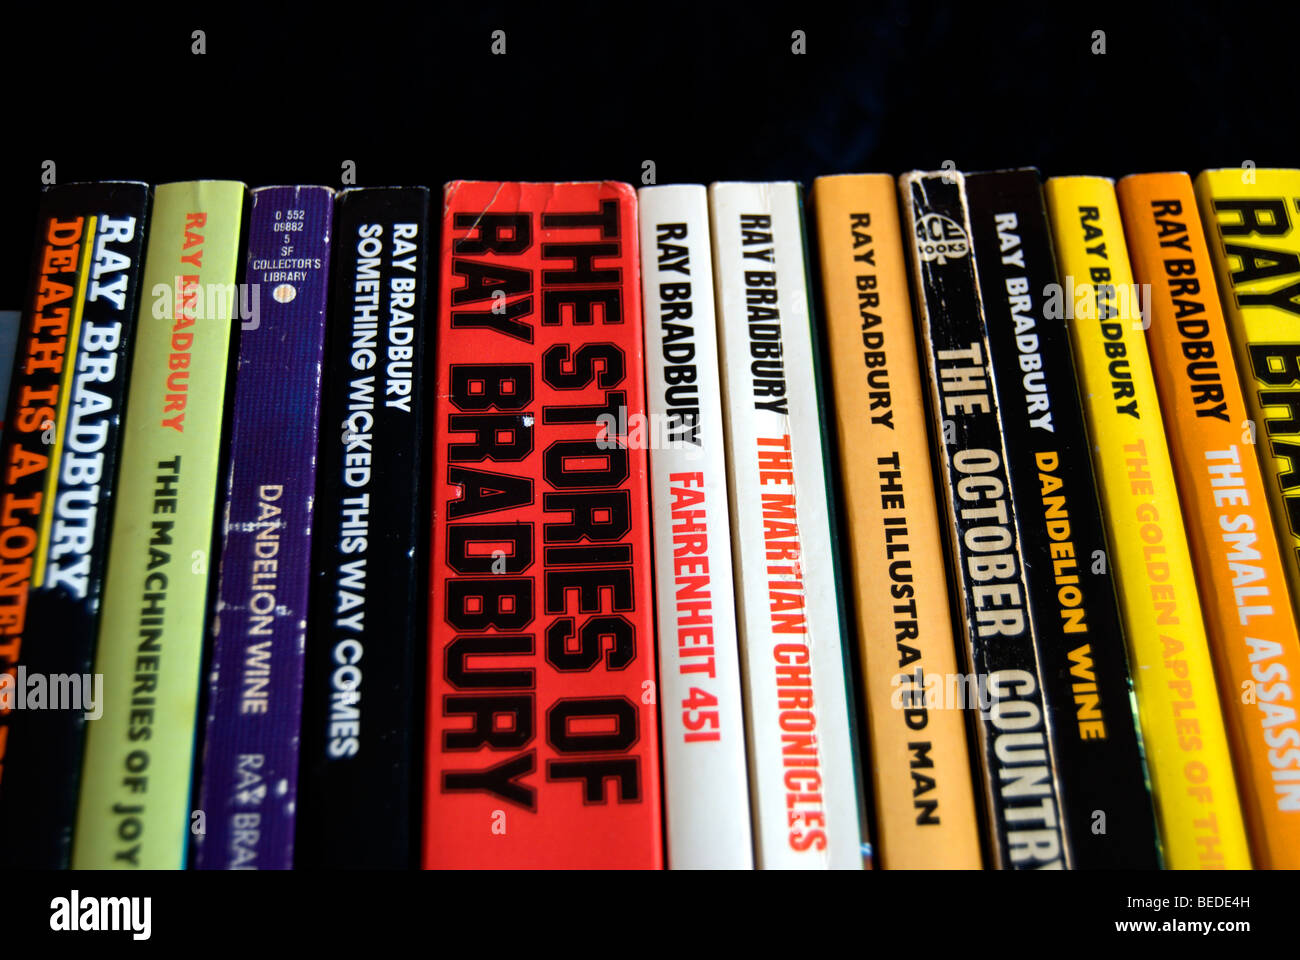 Rangée de livres de science-fiction américain Ray Bradbury, y compris son œuvre la plus connue, Fahrenheit 451 Banque D'Images